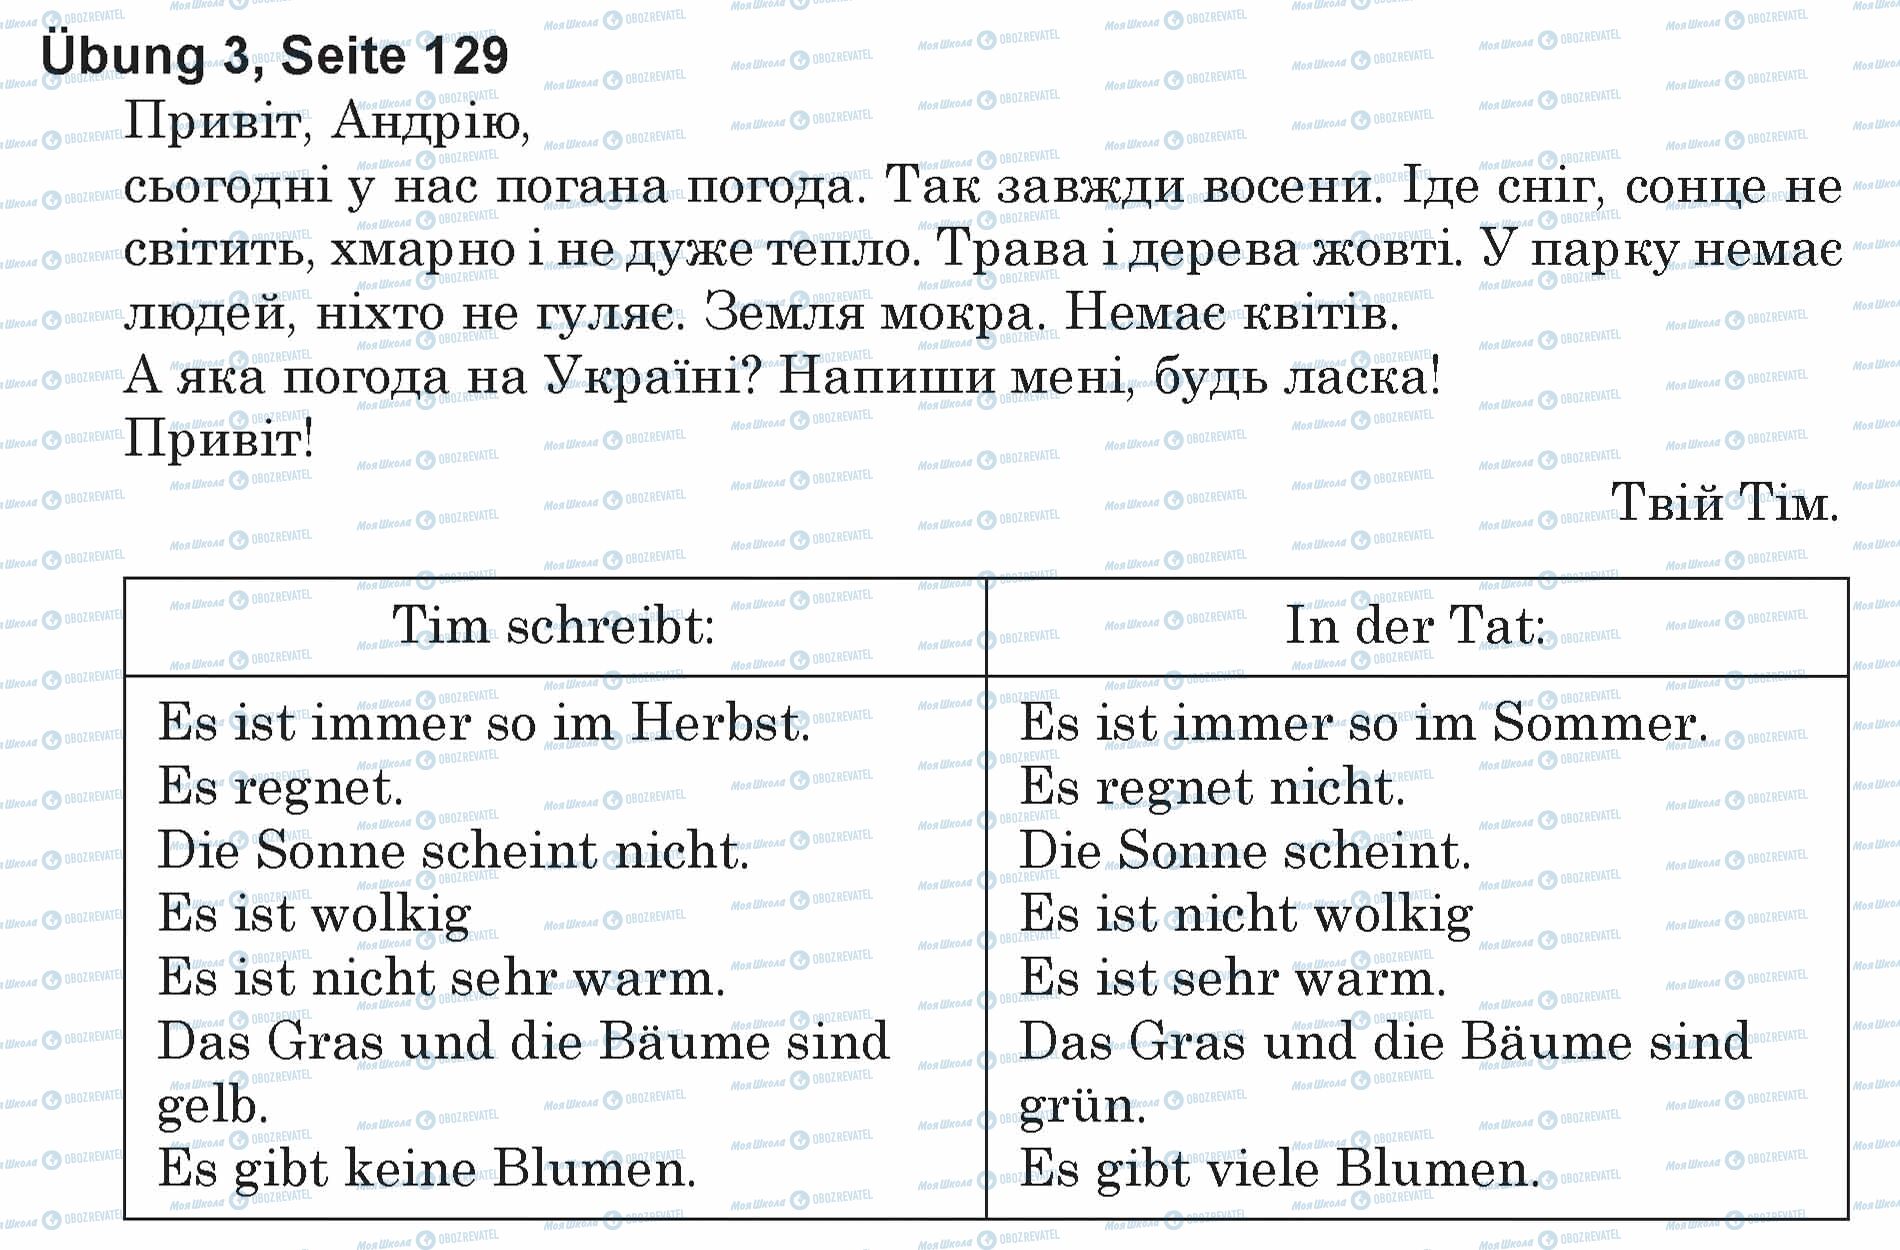 ГДЗ Німецька мова 5 клас сторінка Ubung 3, Seite 129